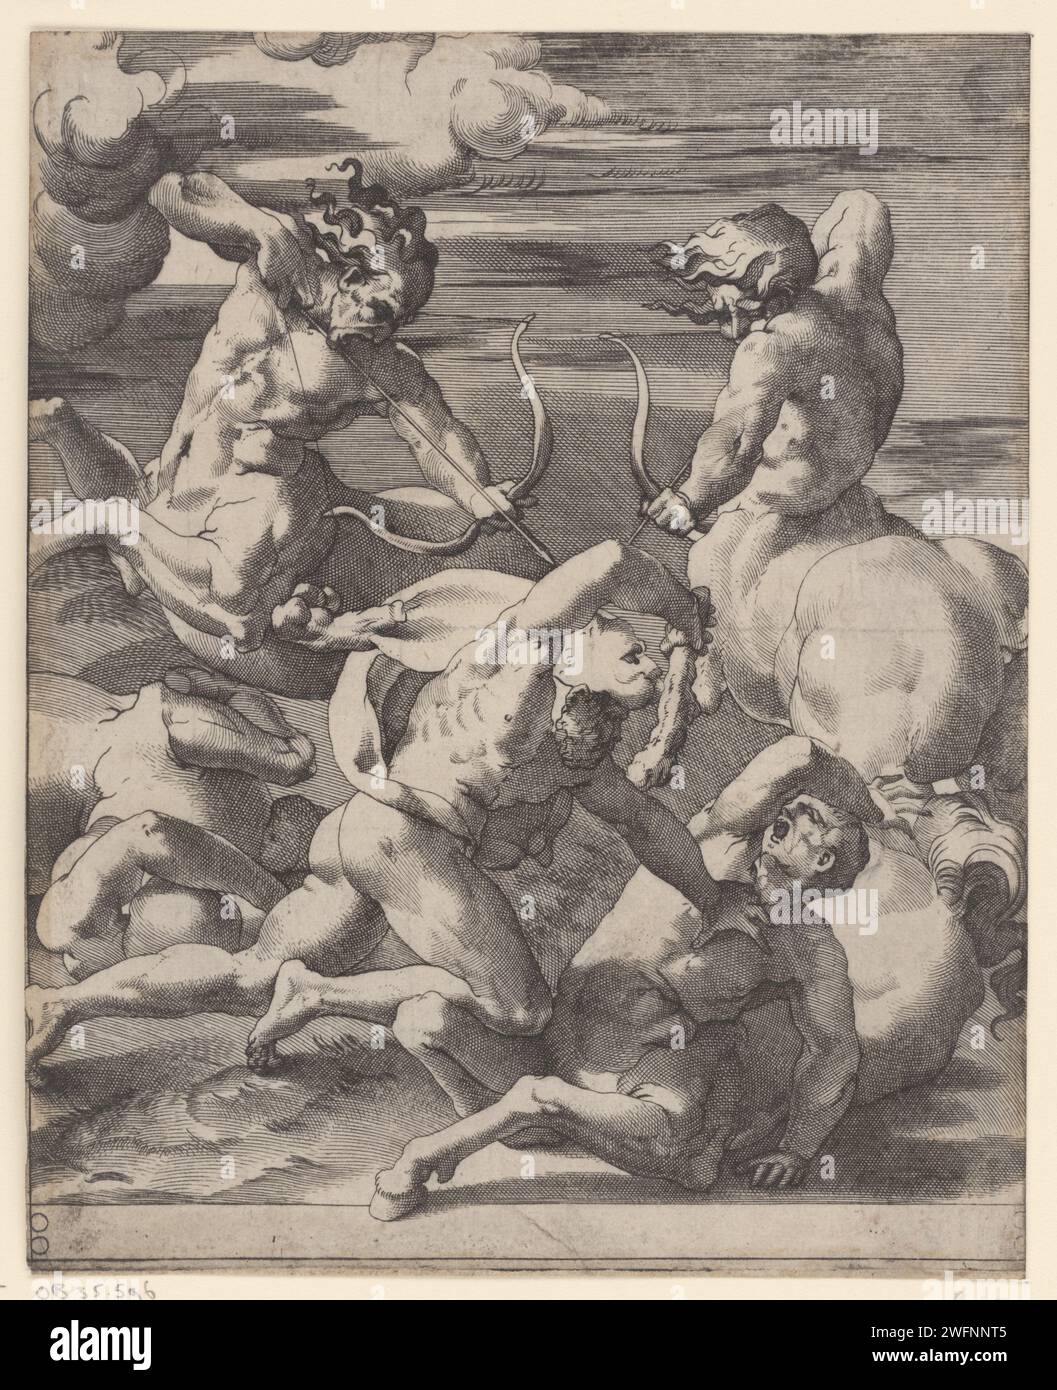 Ercole a Gevecht incontrò Centauren, Giovanni Jacopo Caraglio, rosso fiorentino dopo, 1515 - 1565 stampa Ercole in battaglia con centauri. Due centimetri concentrano la freccia e l'arco su Ercole. L'incisione italiana della lotta di Ercole con i centauri Foto Stock